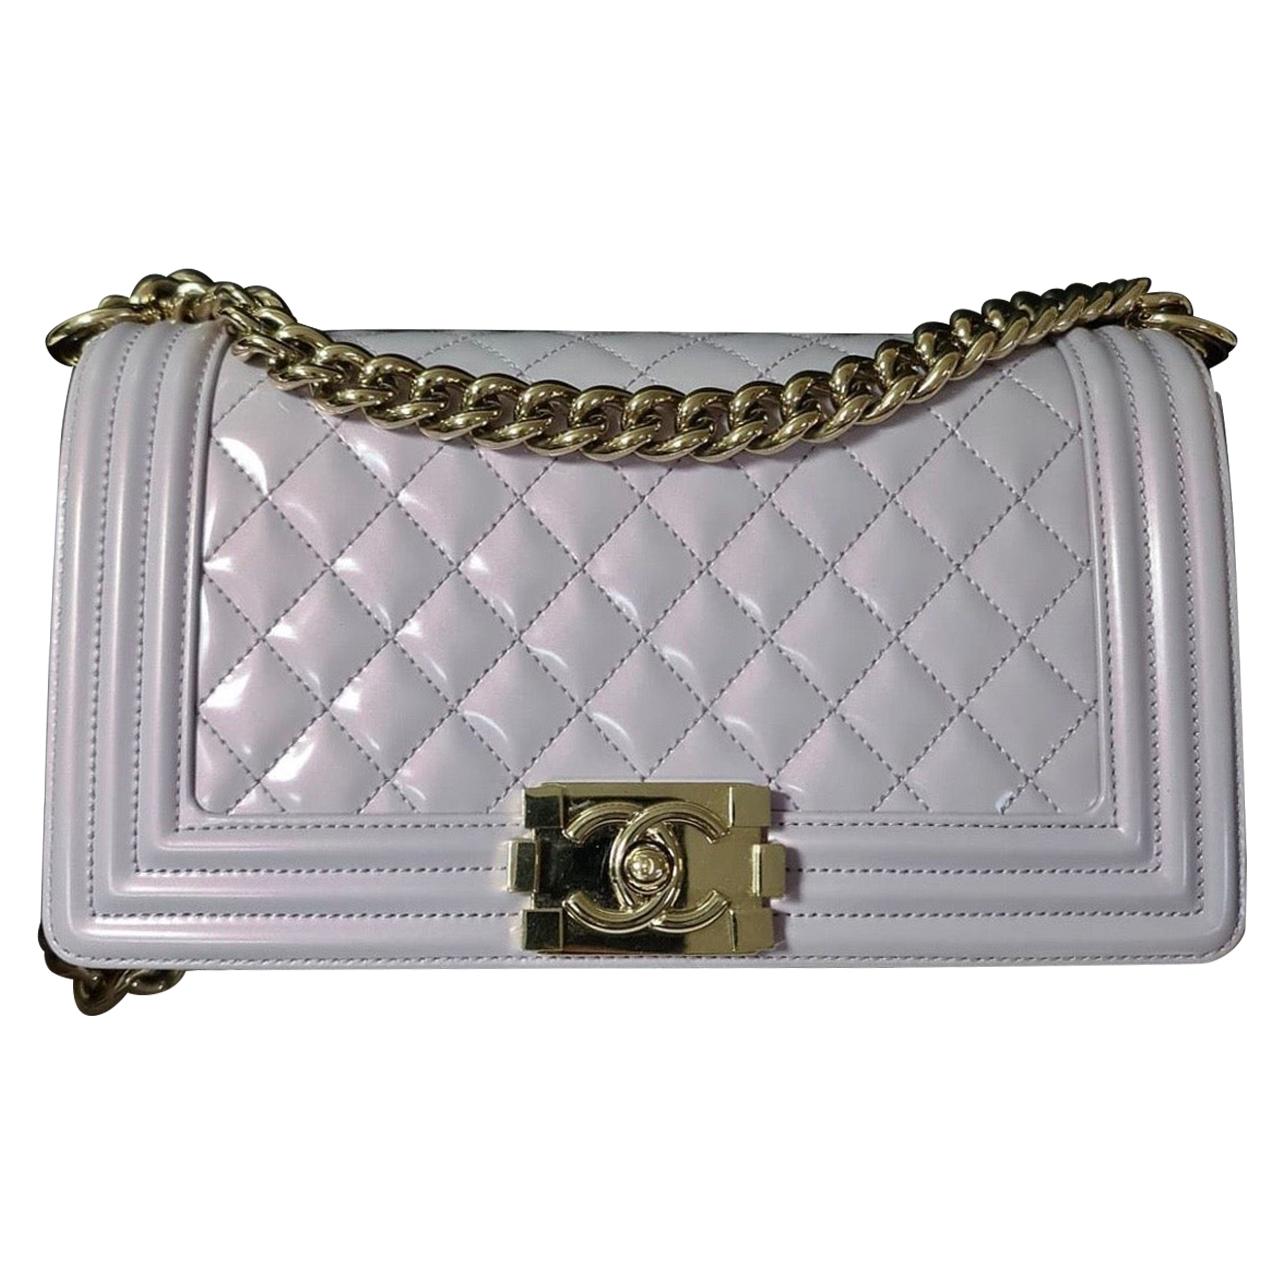 Chanel Iridescent Calfskin Medium Boy Bag